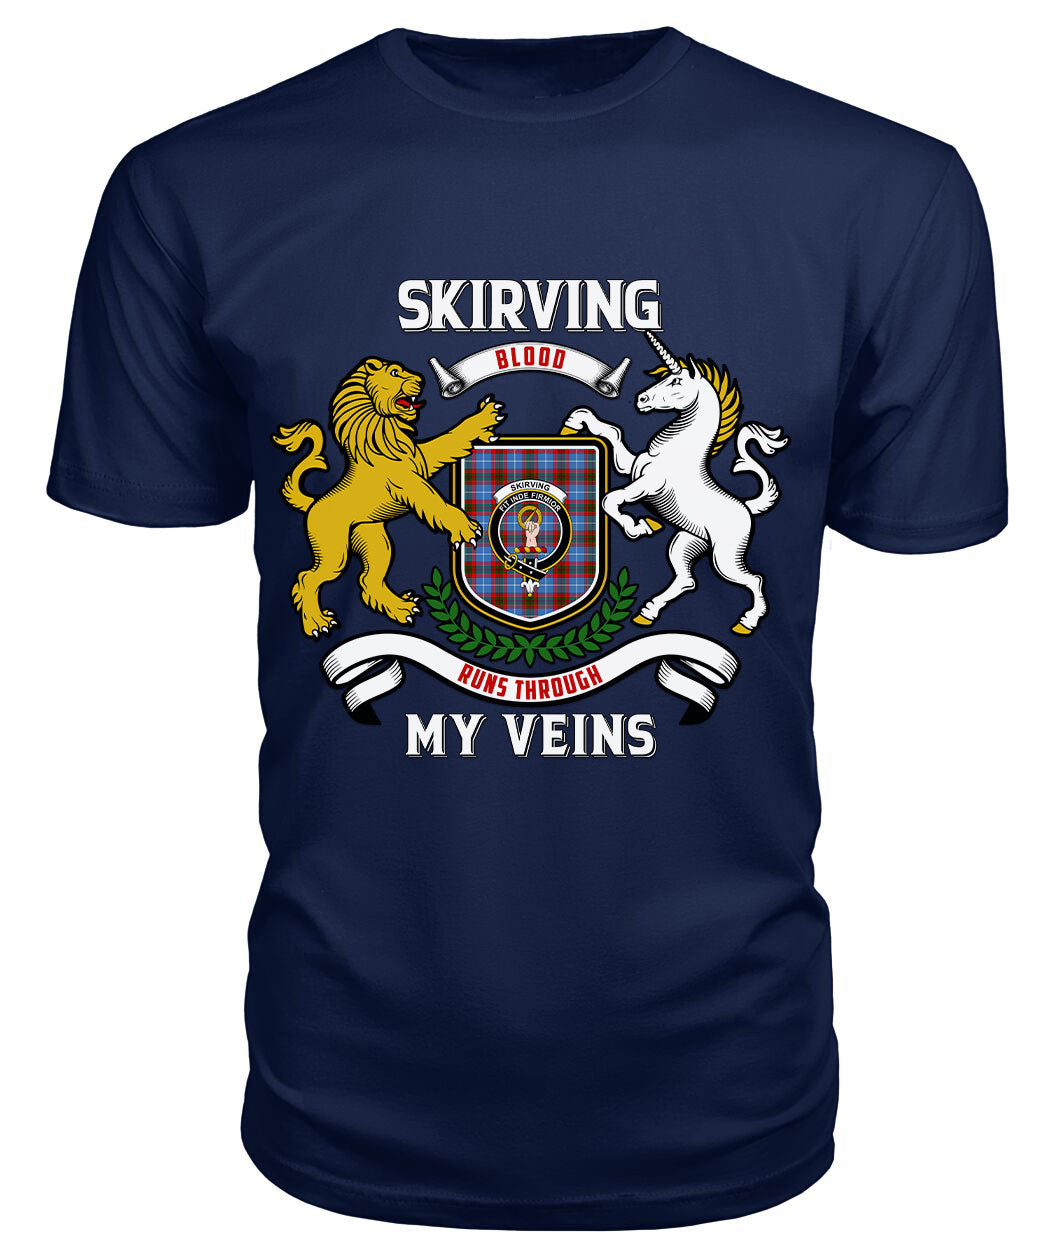 Skirving Tartan Crest 2D T-shirt - Blood Runs Through My Veins Style